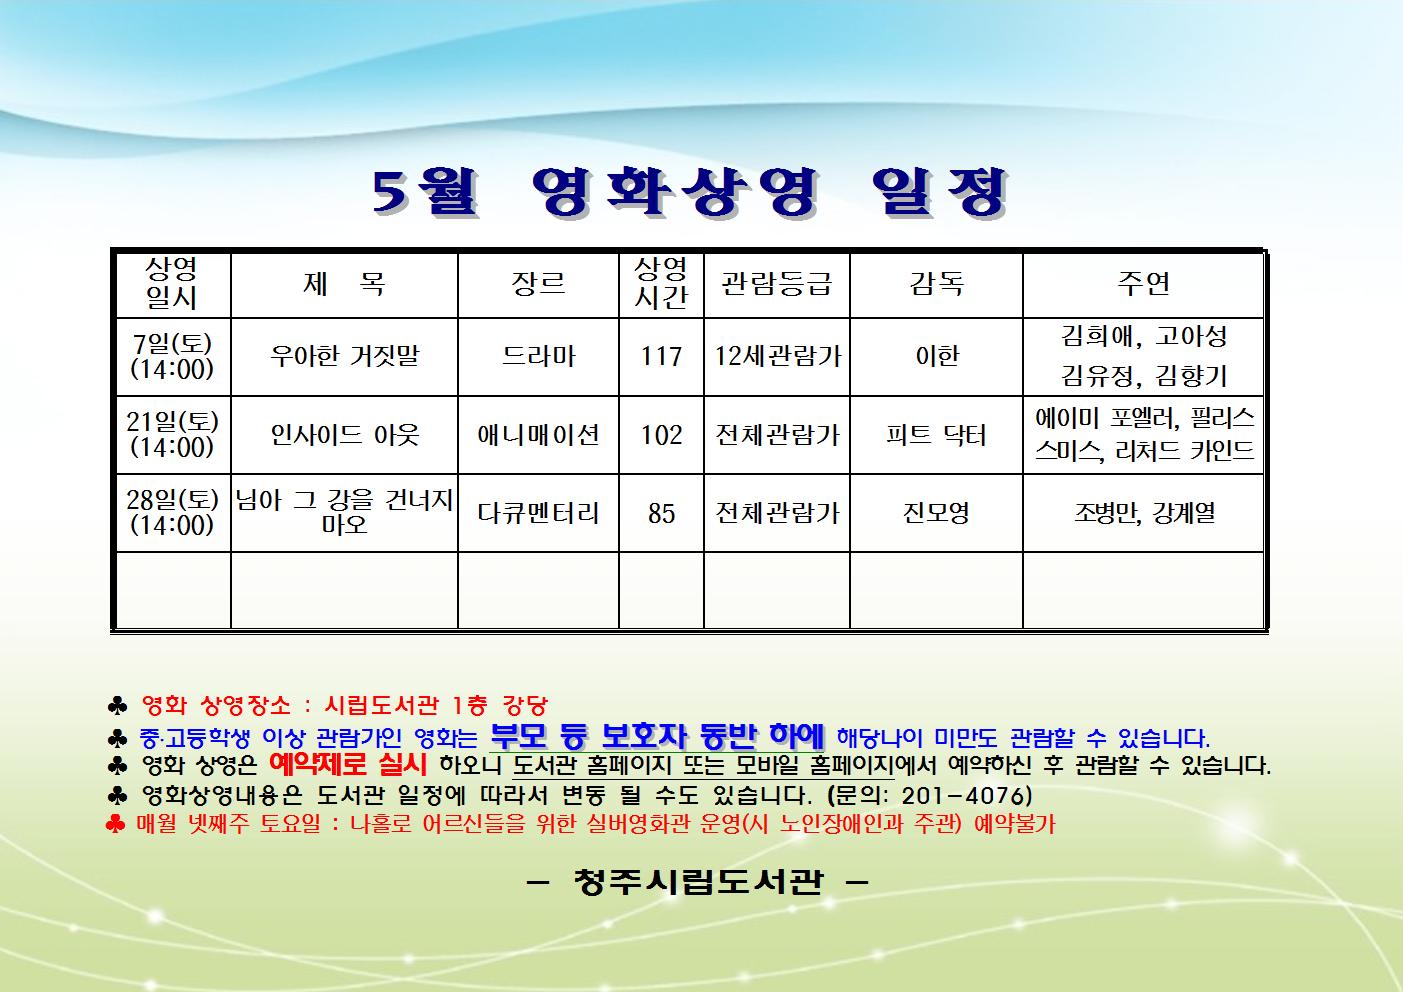 2014년 5월 시립도서관 영화상영 일정안내